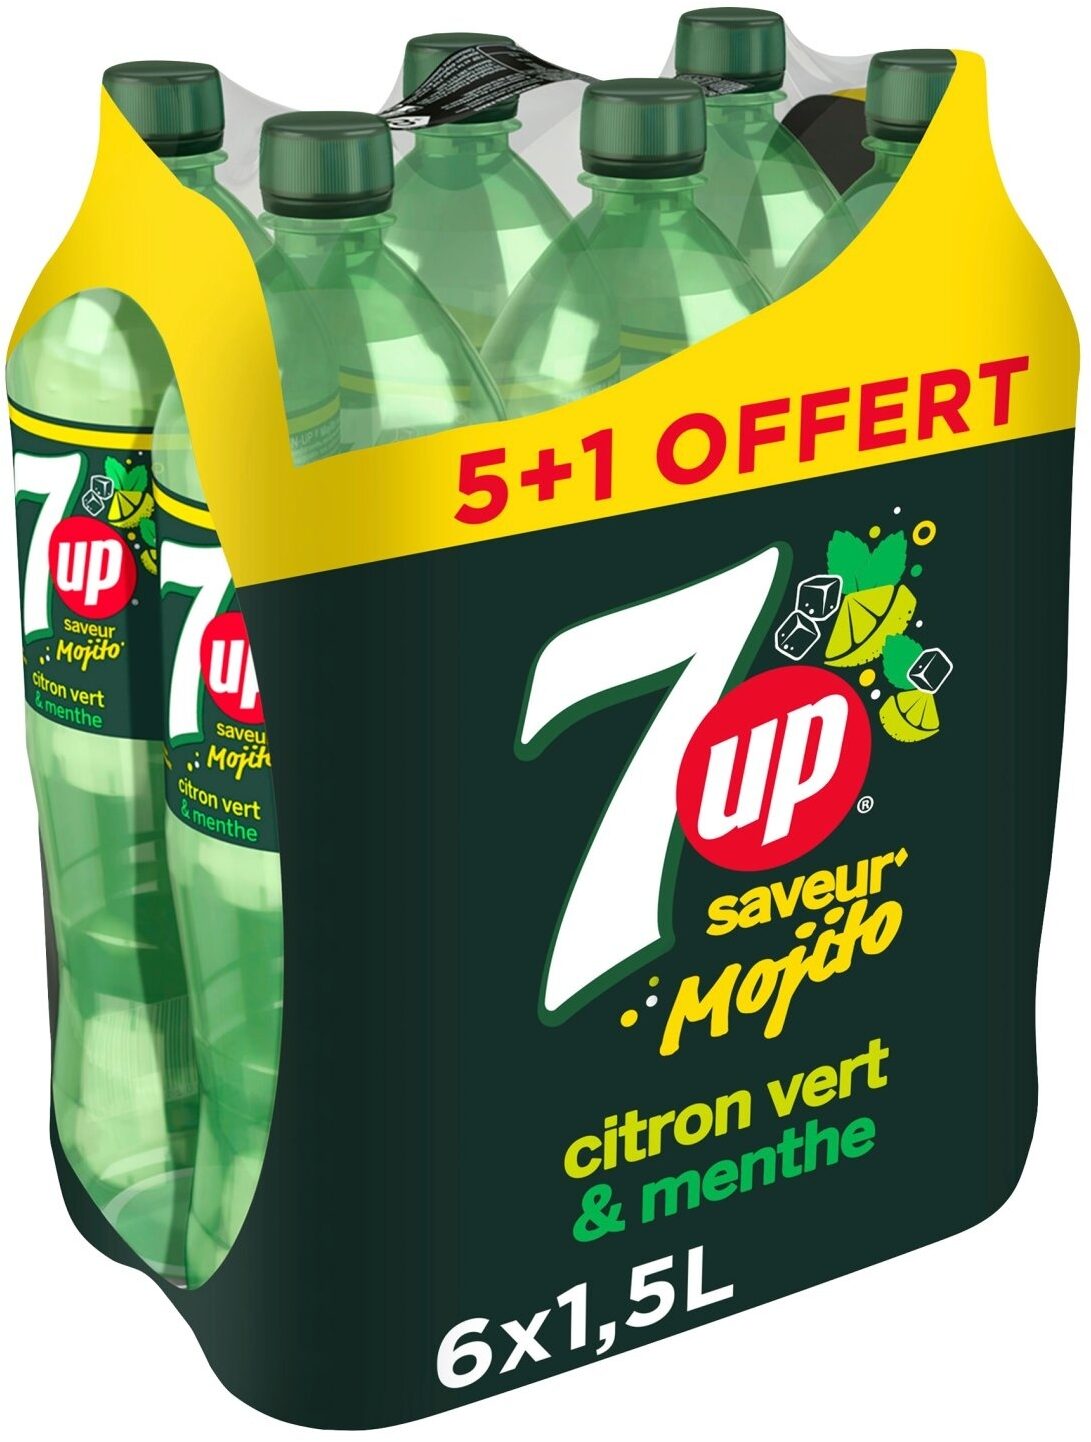 7UP saveur mojito citron vert & menthe 6 x 1,5 L 5 + 1 offert - نتاج - fr